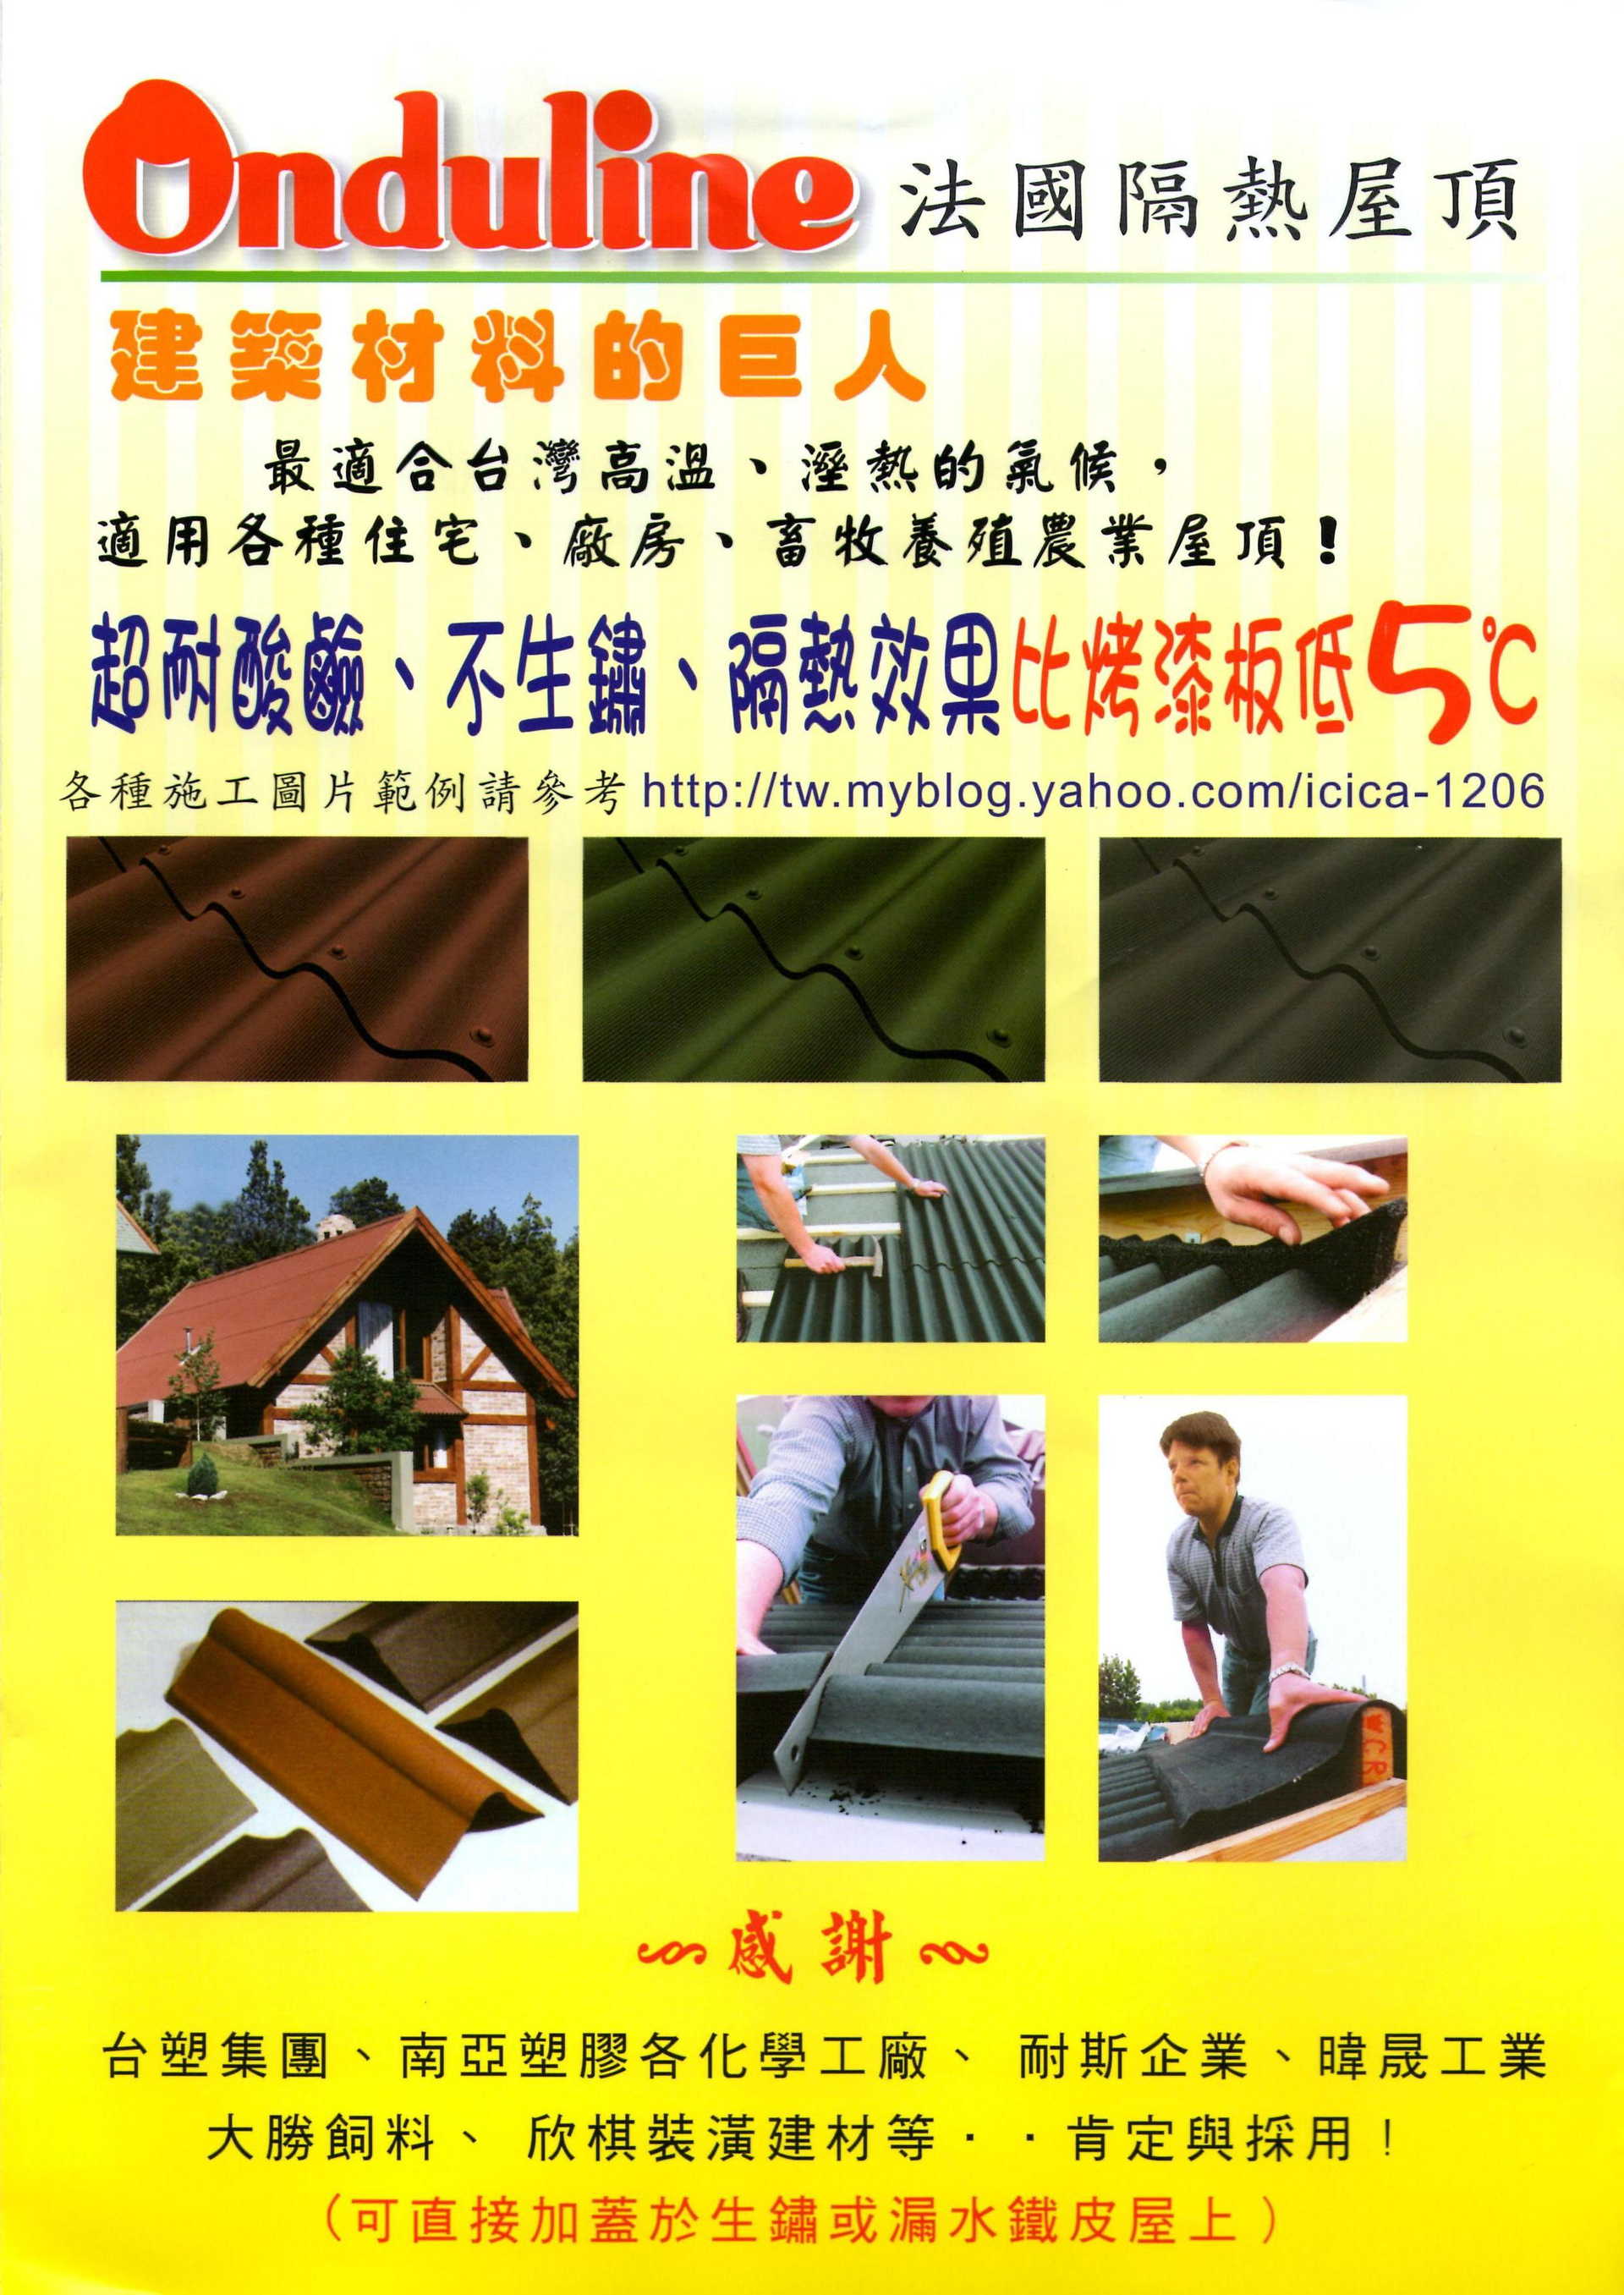 用得耐屋頂-免拆屋頂-防銹抗腐